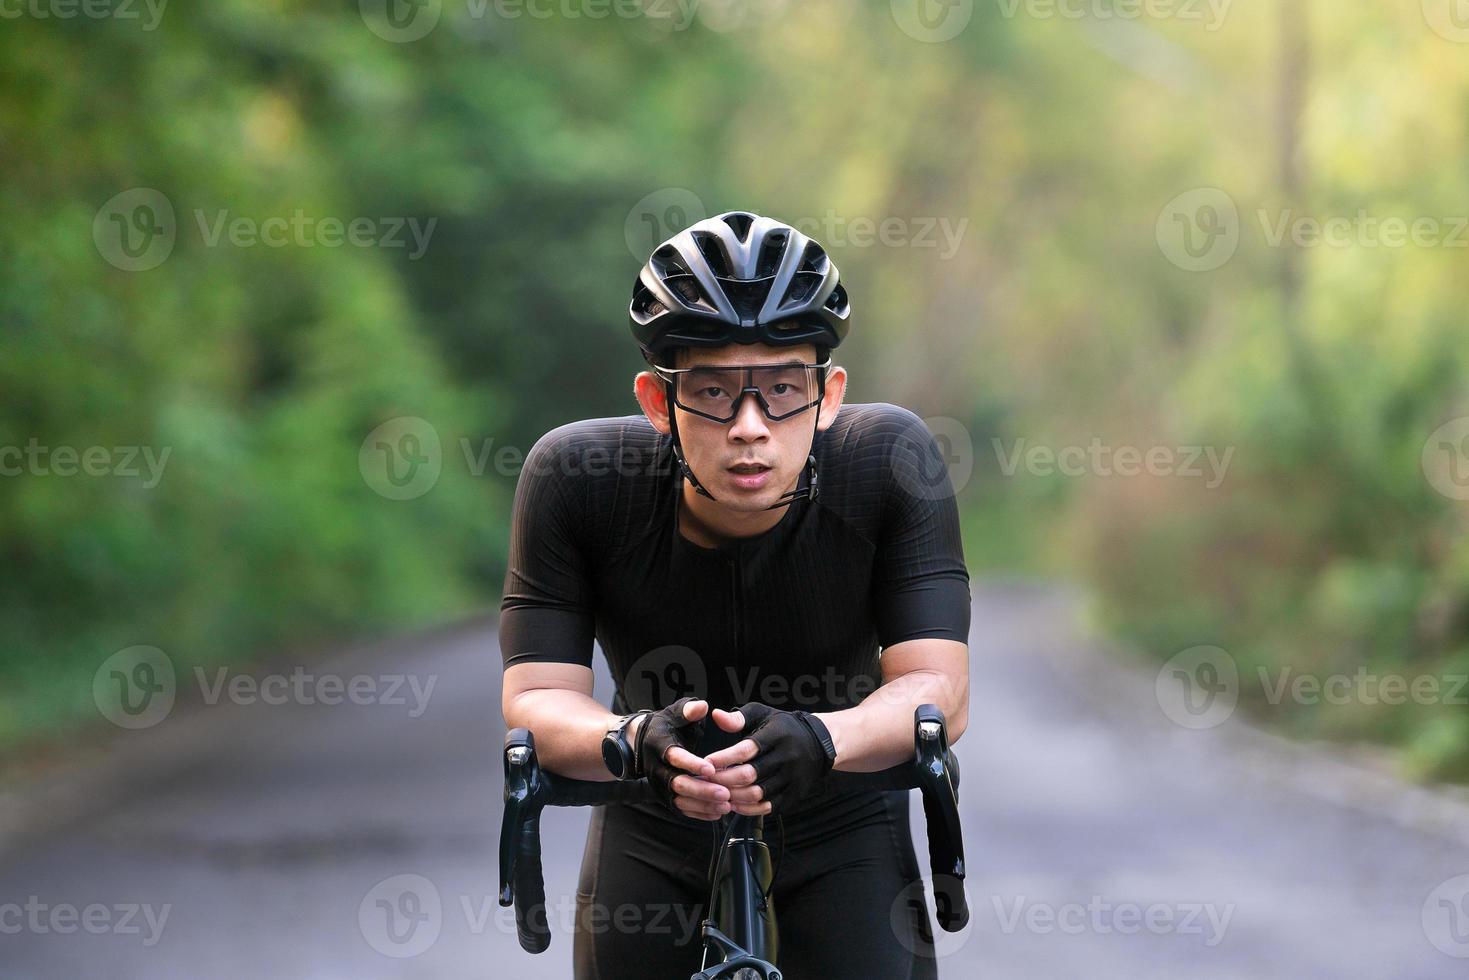 andar de bicicleta cansado e descansar durante o passeio de bicicleta na rua, estrada, com alta velocidade para hobby de exercícios e competição em tour profissional foto